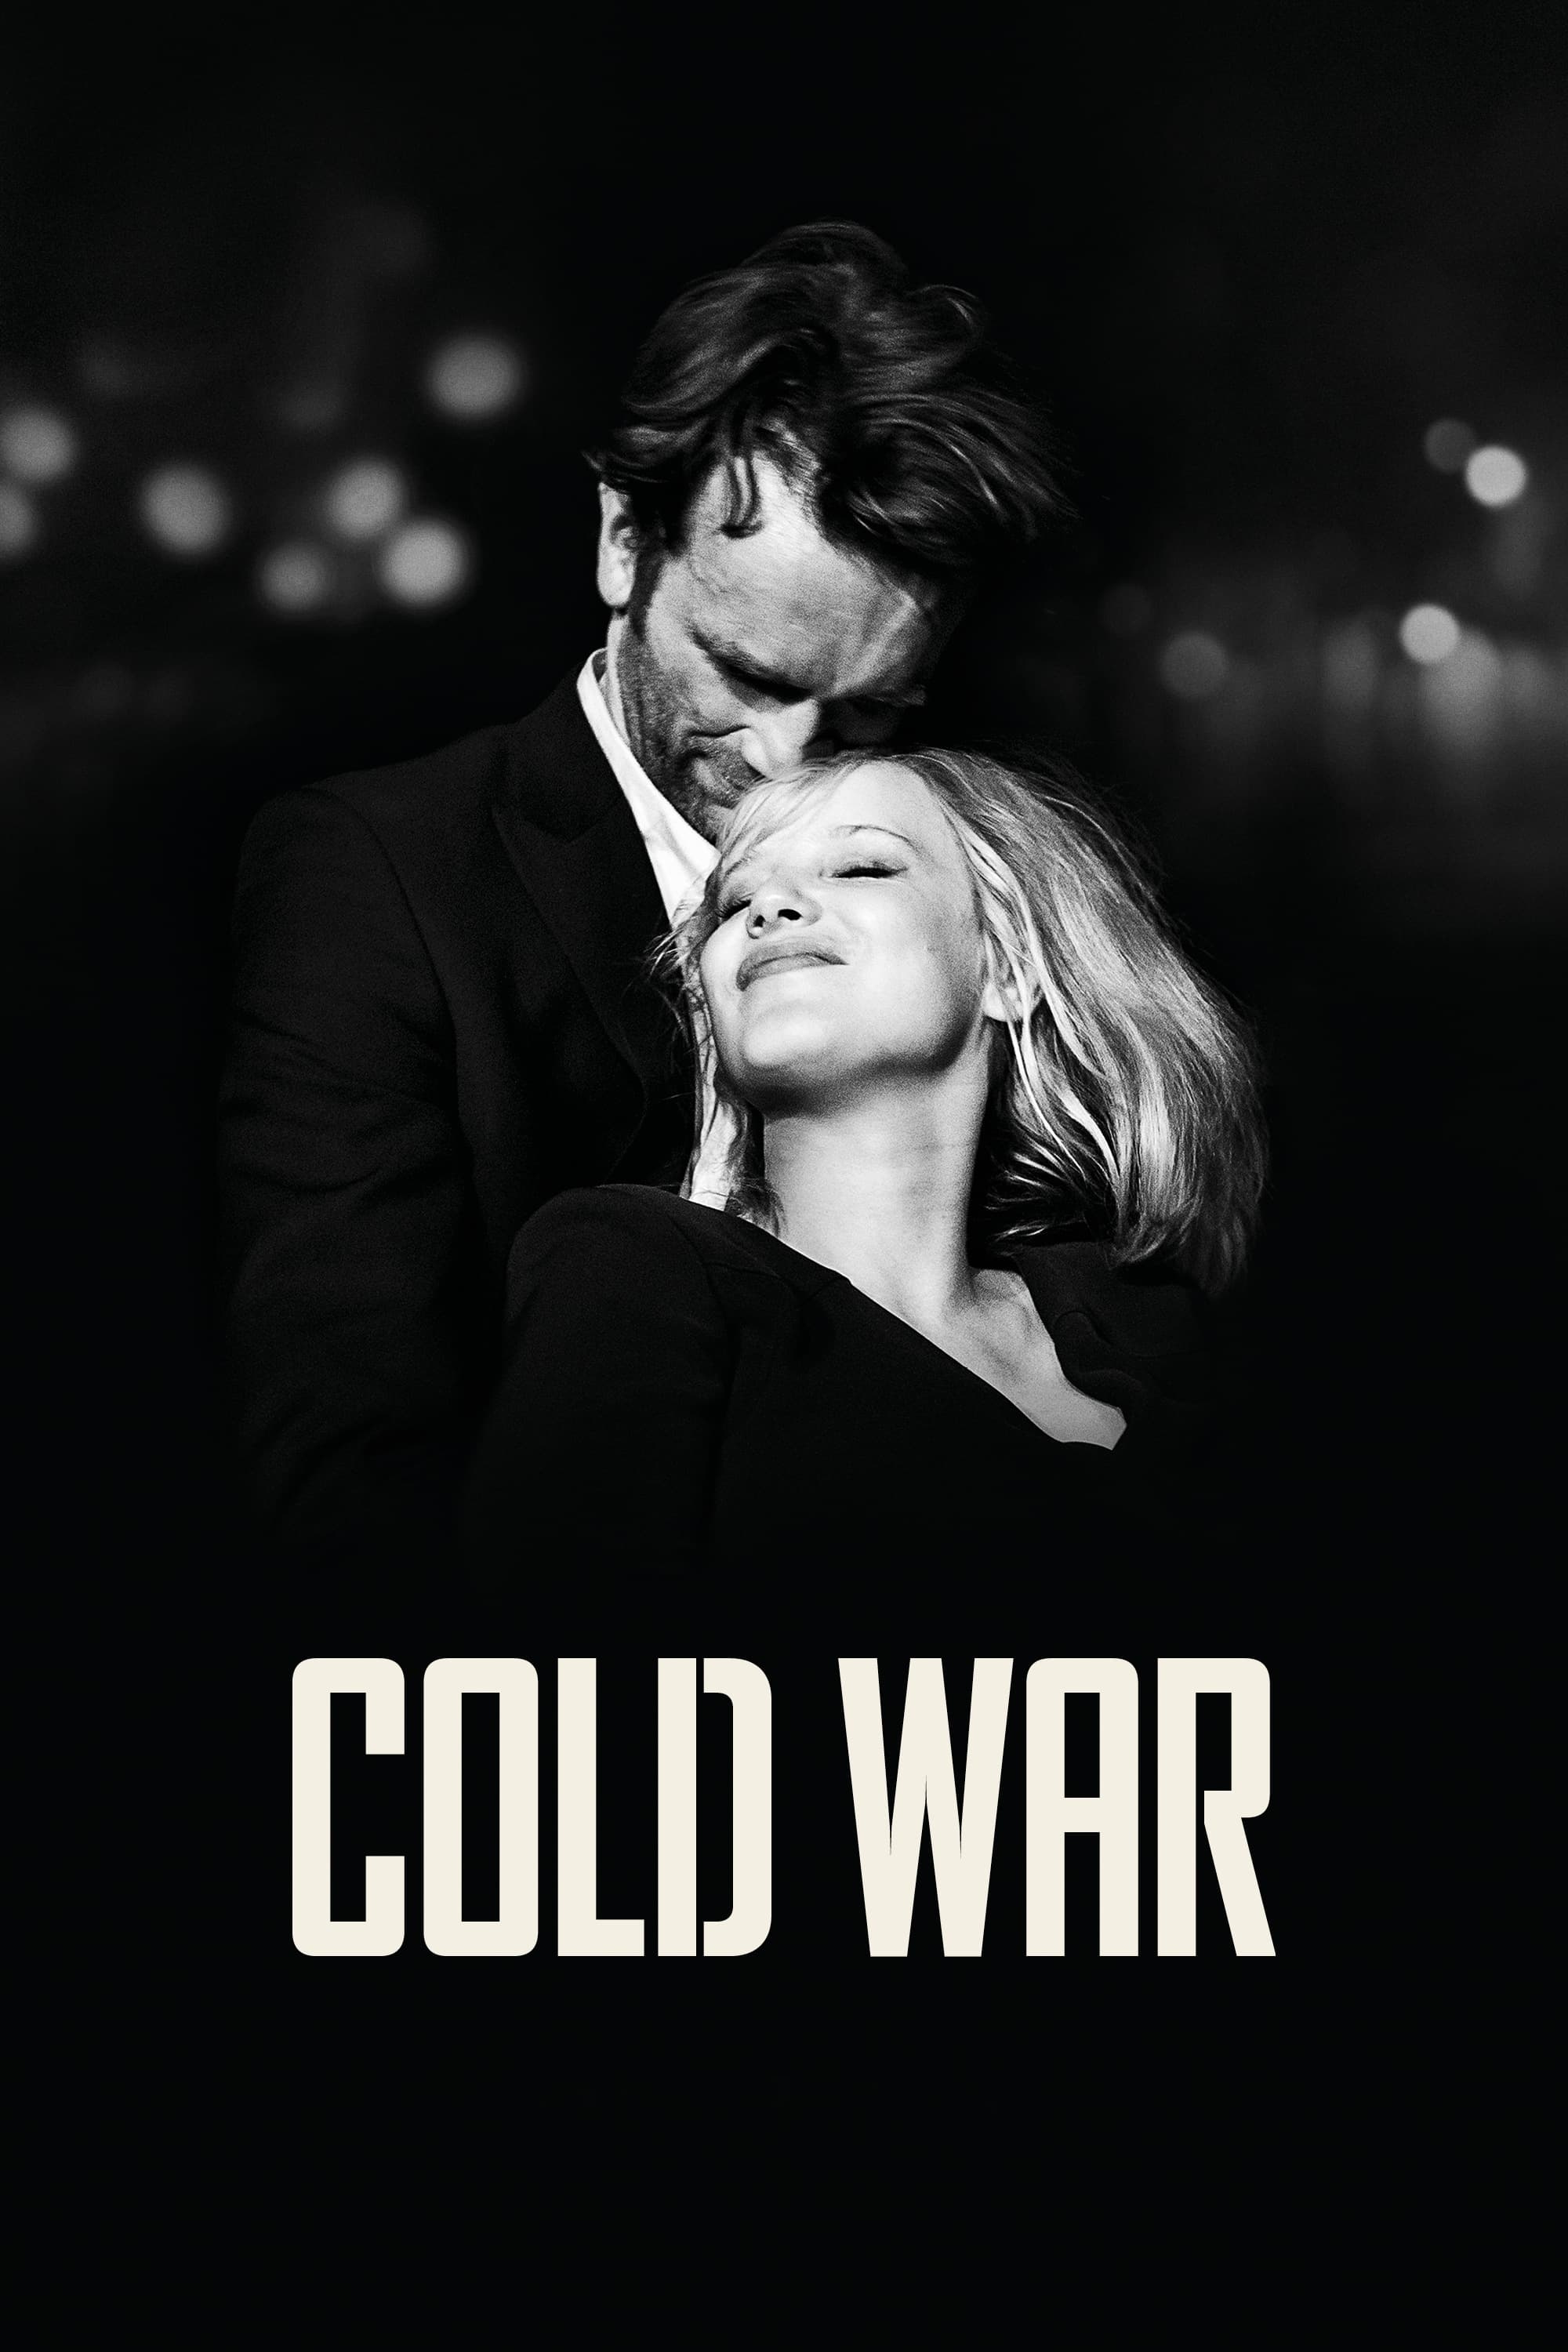 Cold War - Der Breitengrad der Liebe